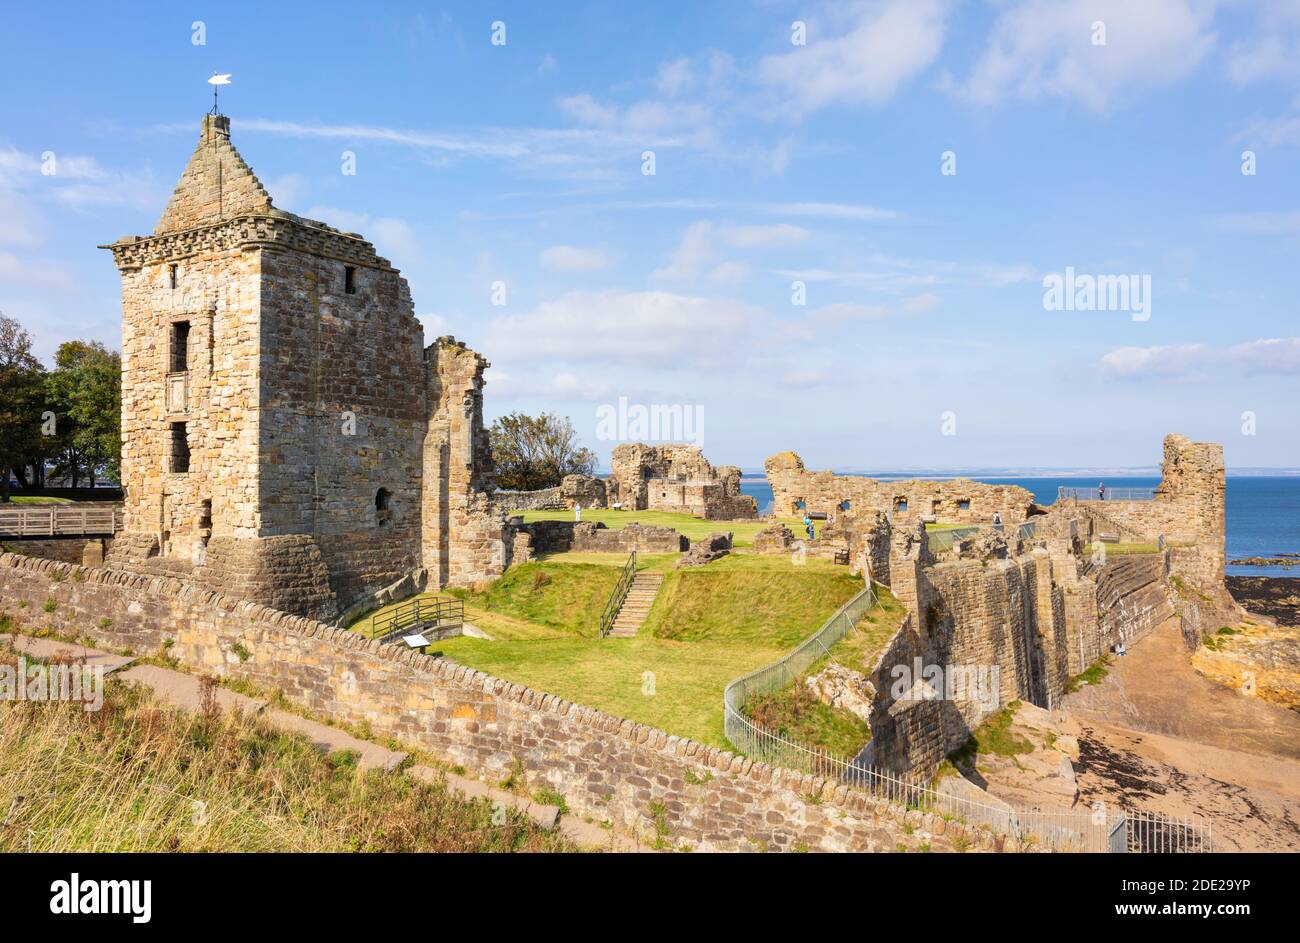 St Andrews Scotland St Andrews Castle eine malerische Ruine an der Küste des Royal Burgh von St Andrews Fife Scotland UK GB Europe Stockfoto